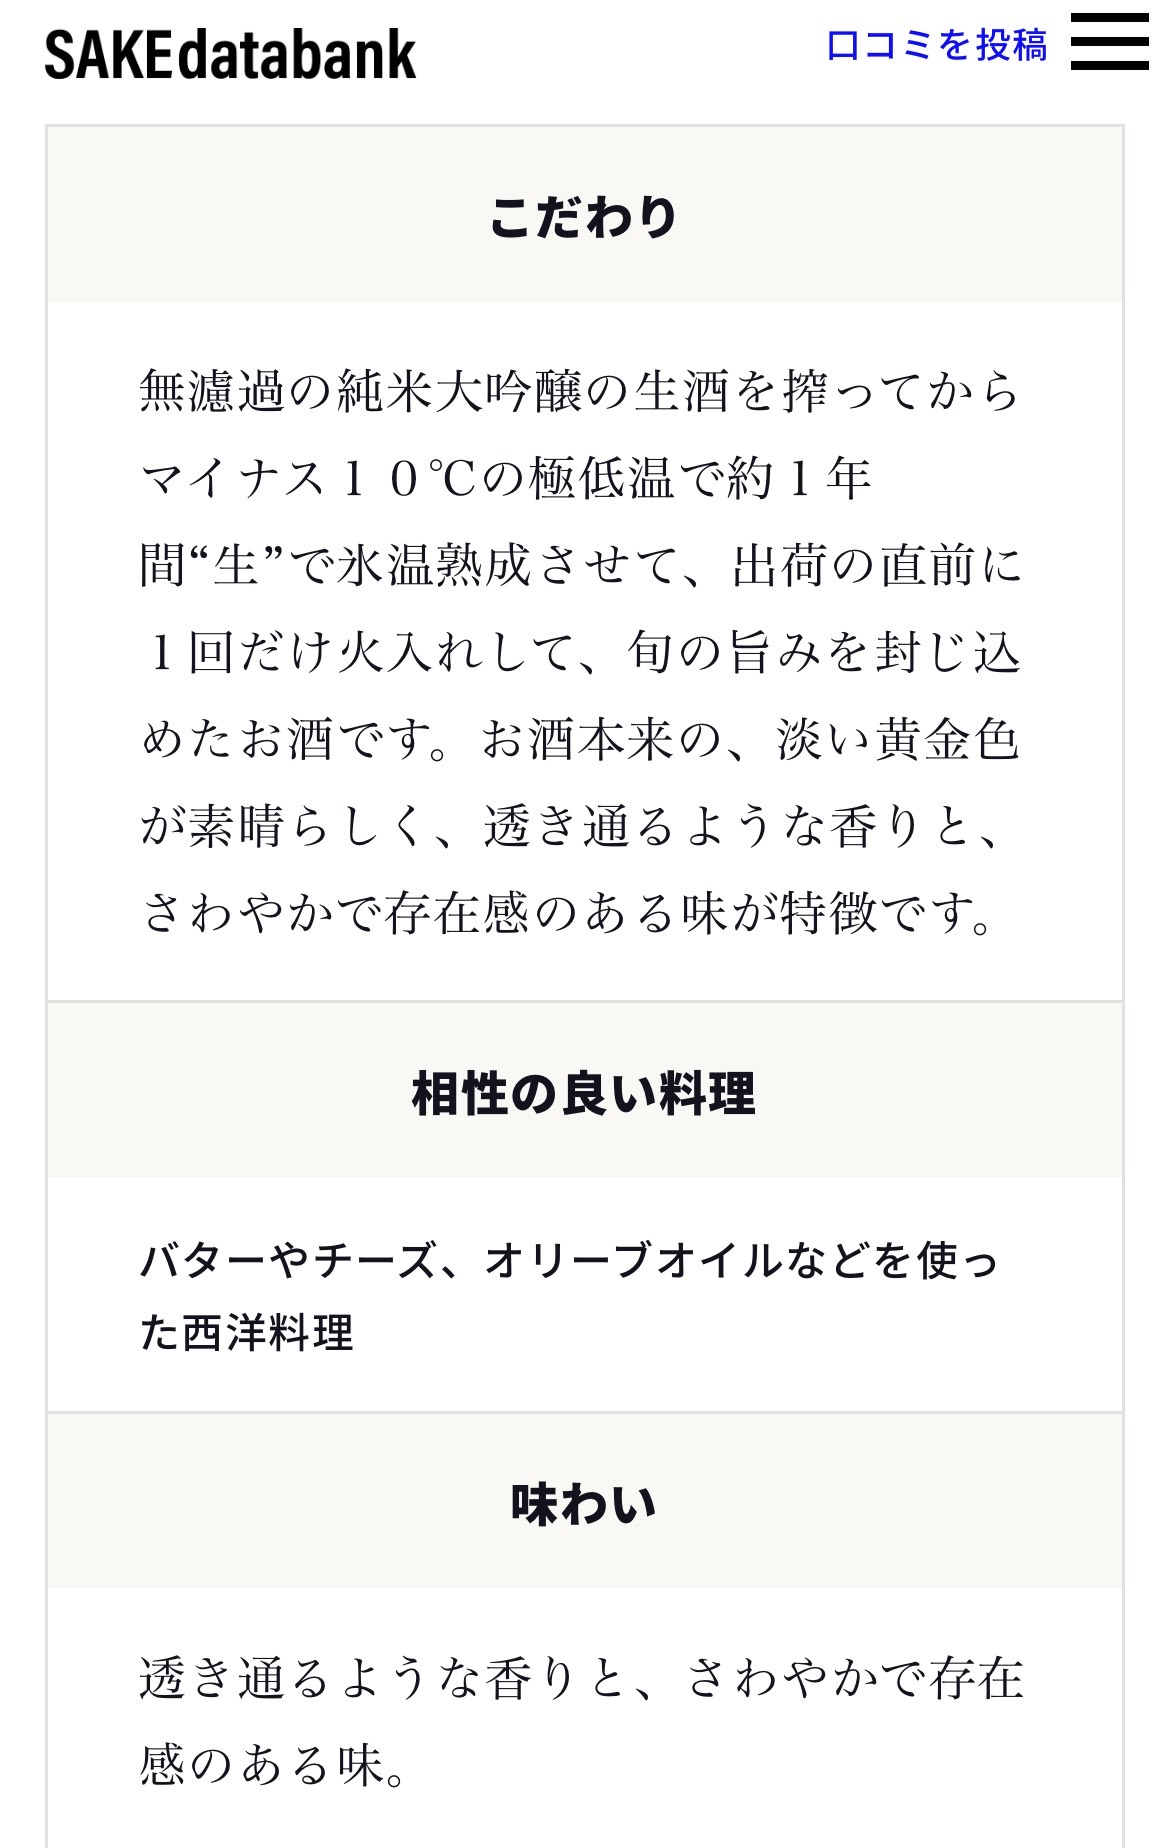 【日本酒WEBサービス】日本酒専門店を運営する株式会社ALL GRACEが日本酒選びをサポートするWEBサービス「SAKEdatabank」をリリース